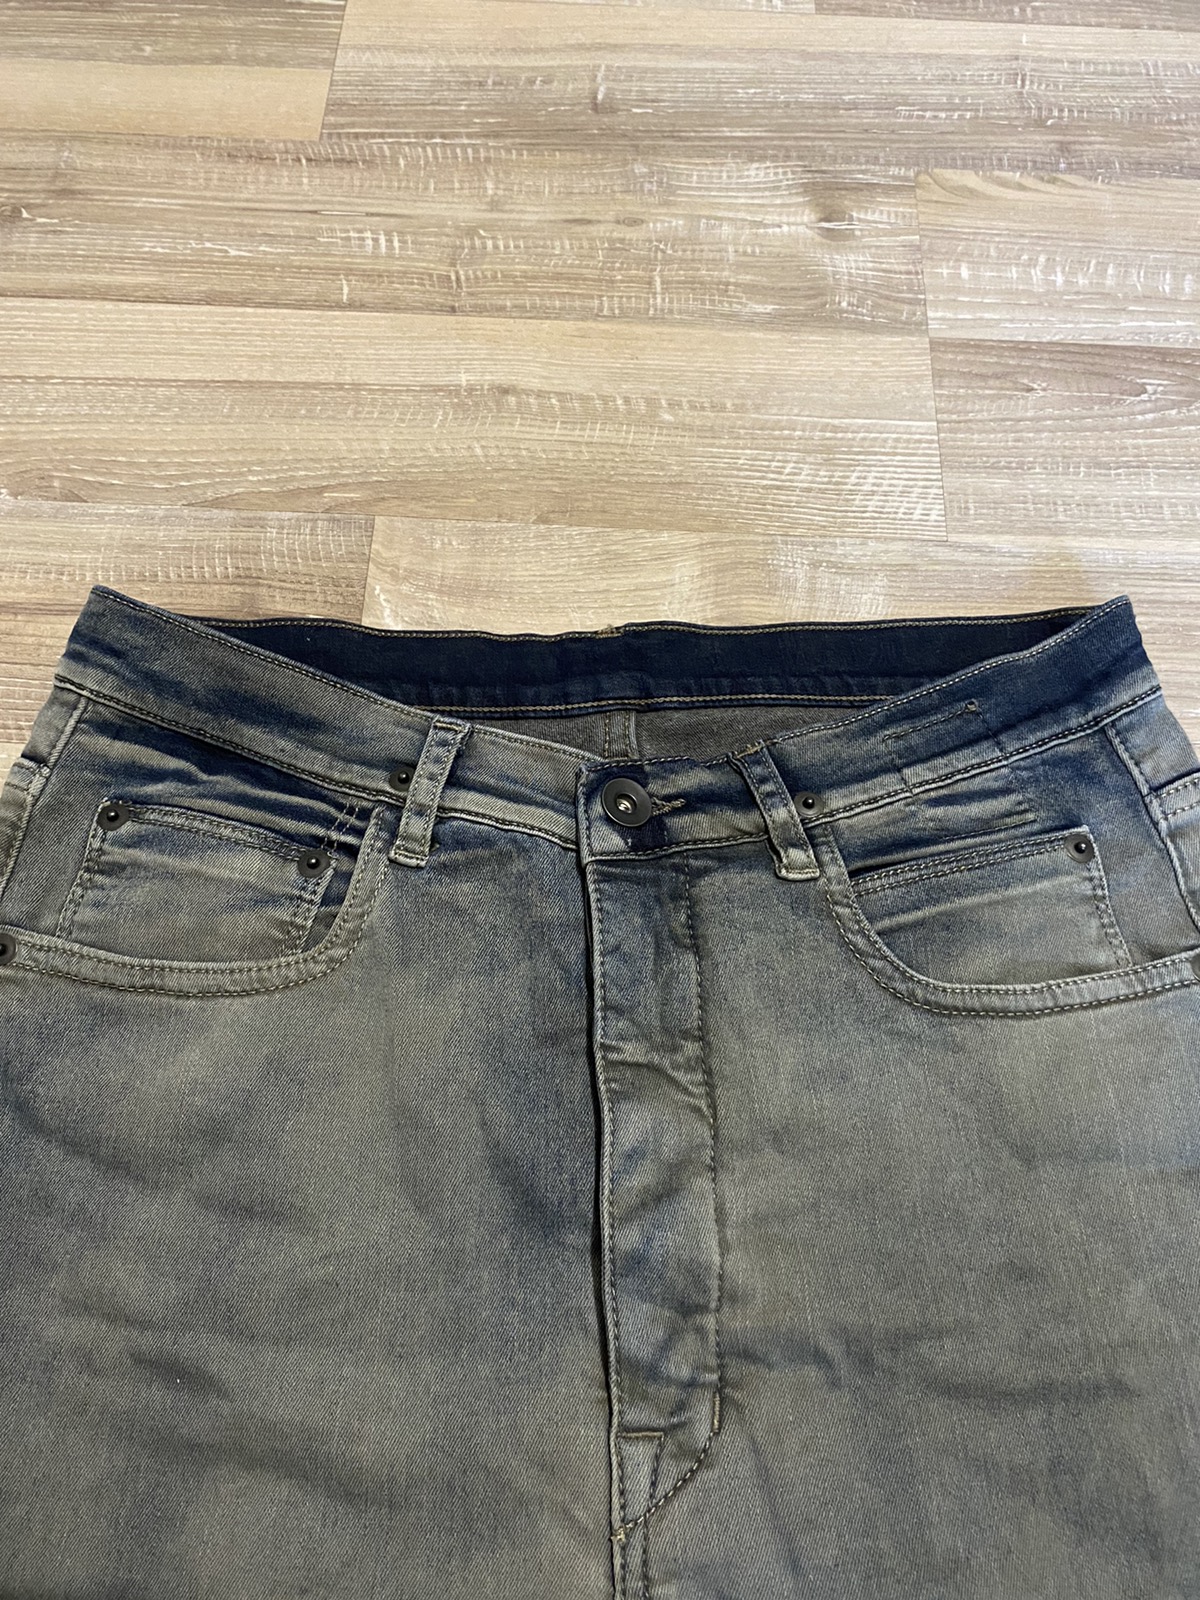 Rick owens jeans DRKSHDW vintage 00s denim torrence croped - 5